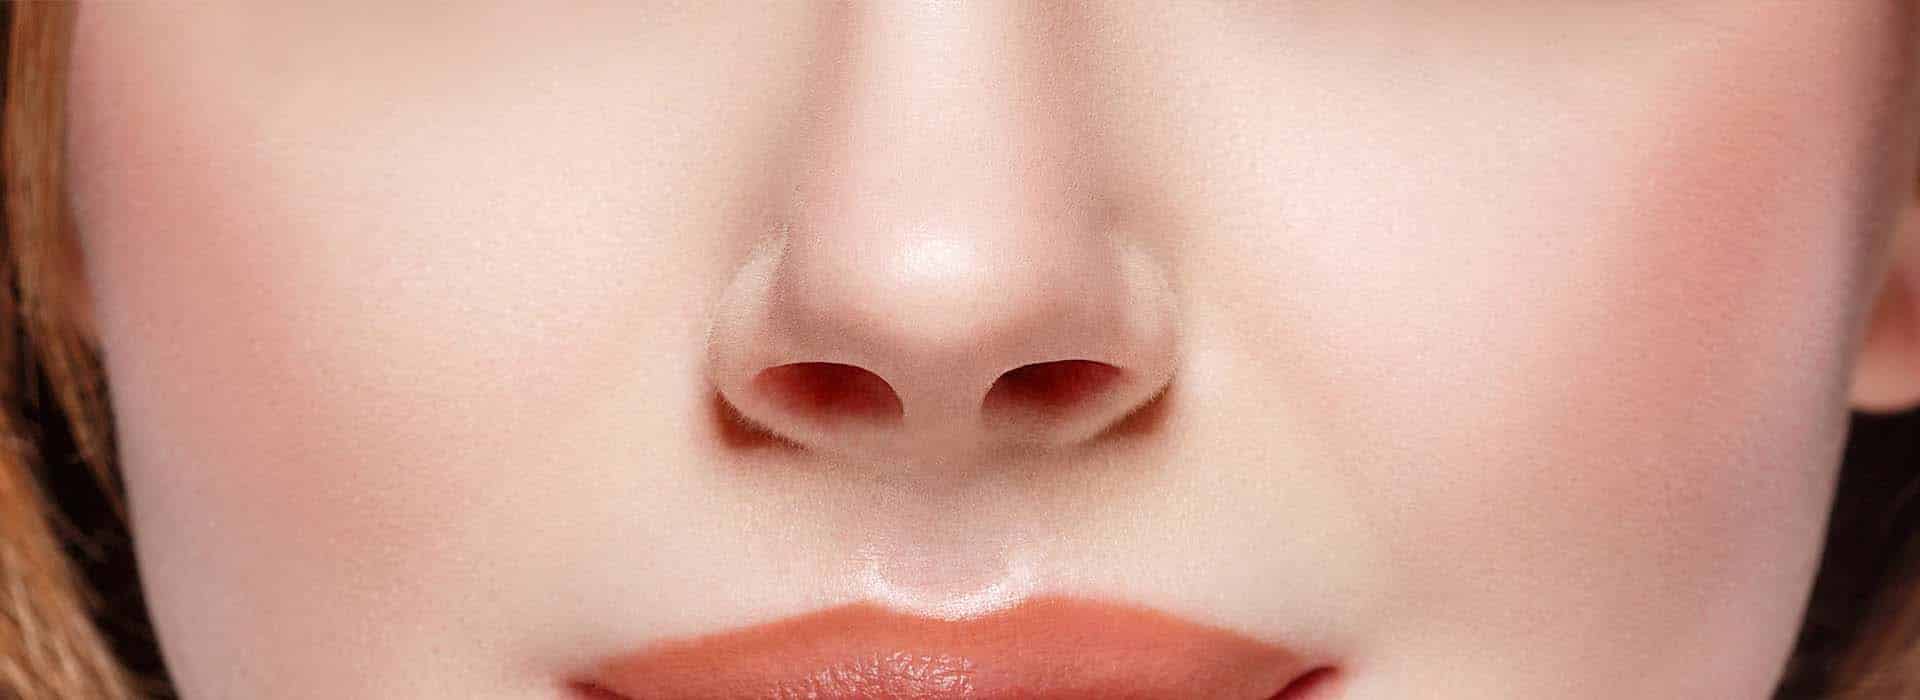 Orificio de la nariz: ¿Qué problemática puede presentar?